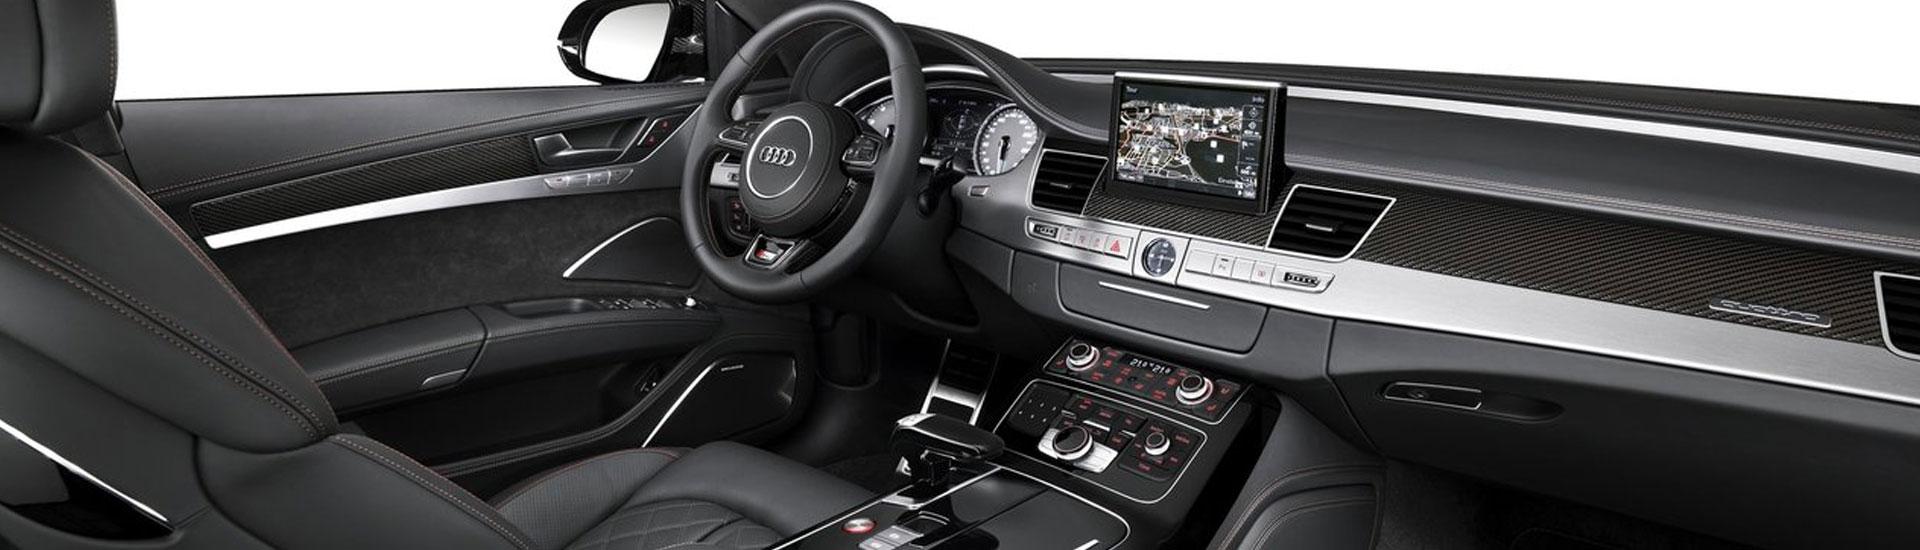 2015 Audi Q3 Custom Dash Kits